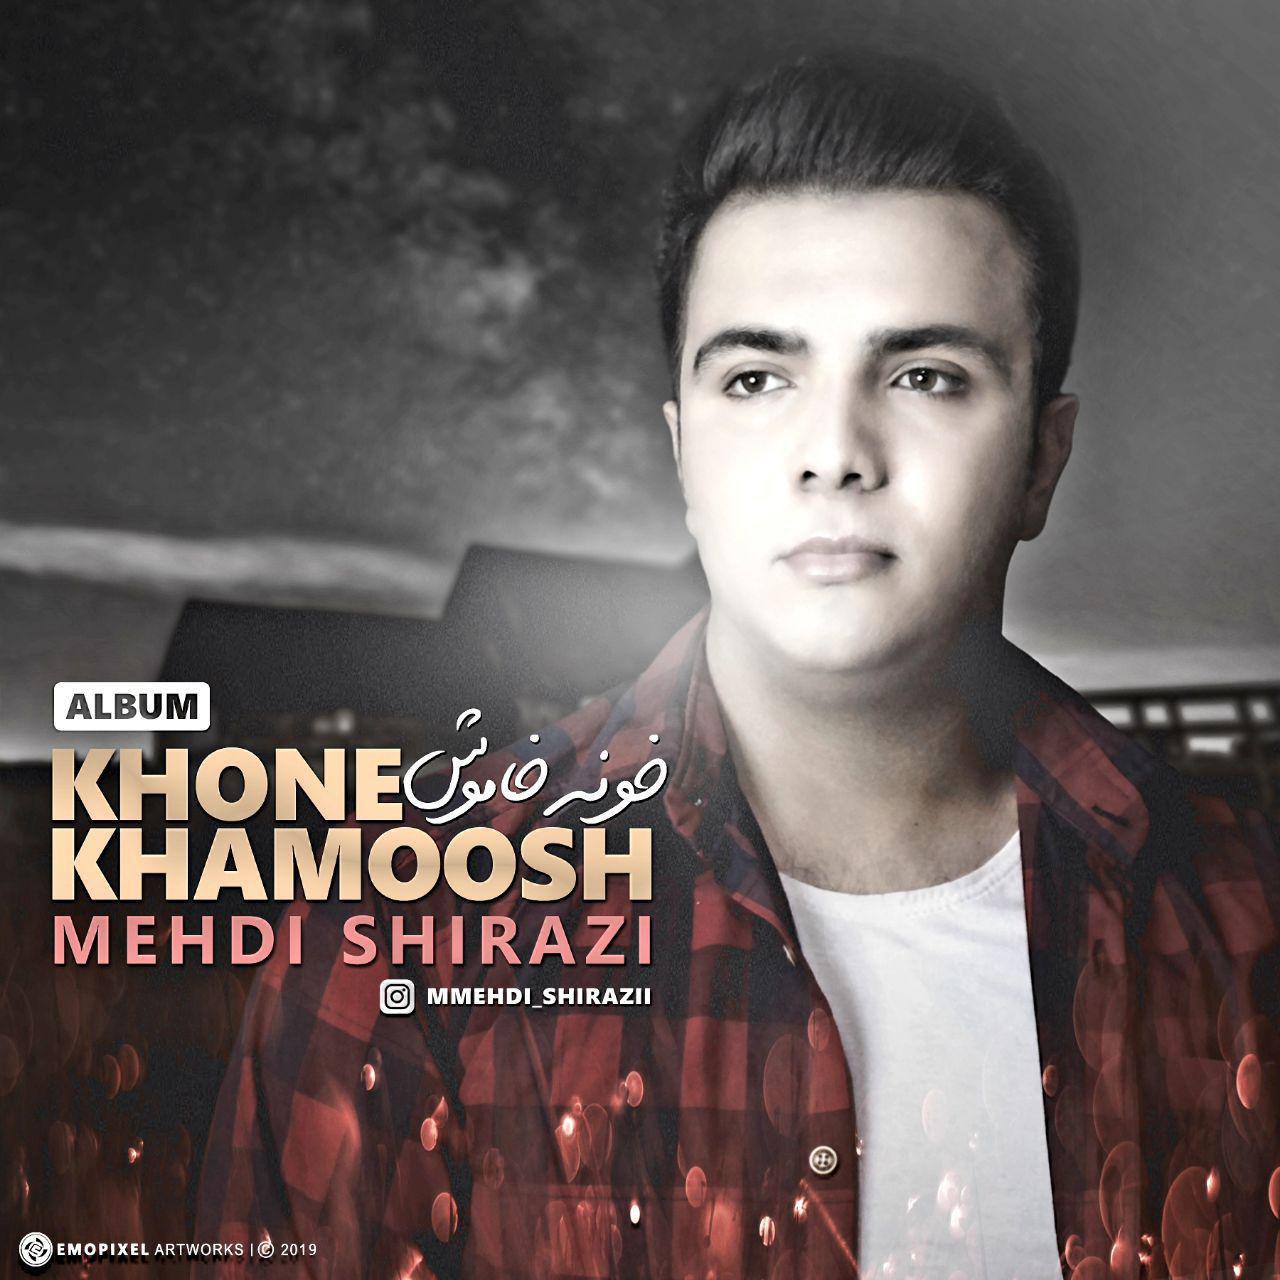  دانلود آهنگ جدید مهدی شیرازی - پشیمونی | Download New Music By Mehdi Shirazi - Pashimooni